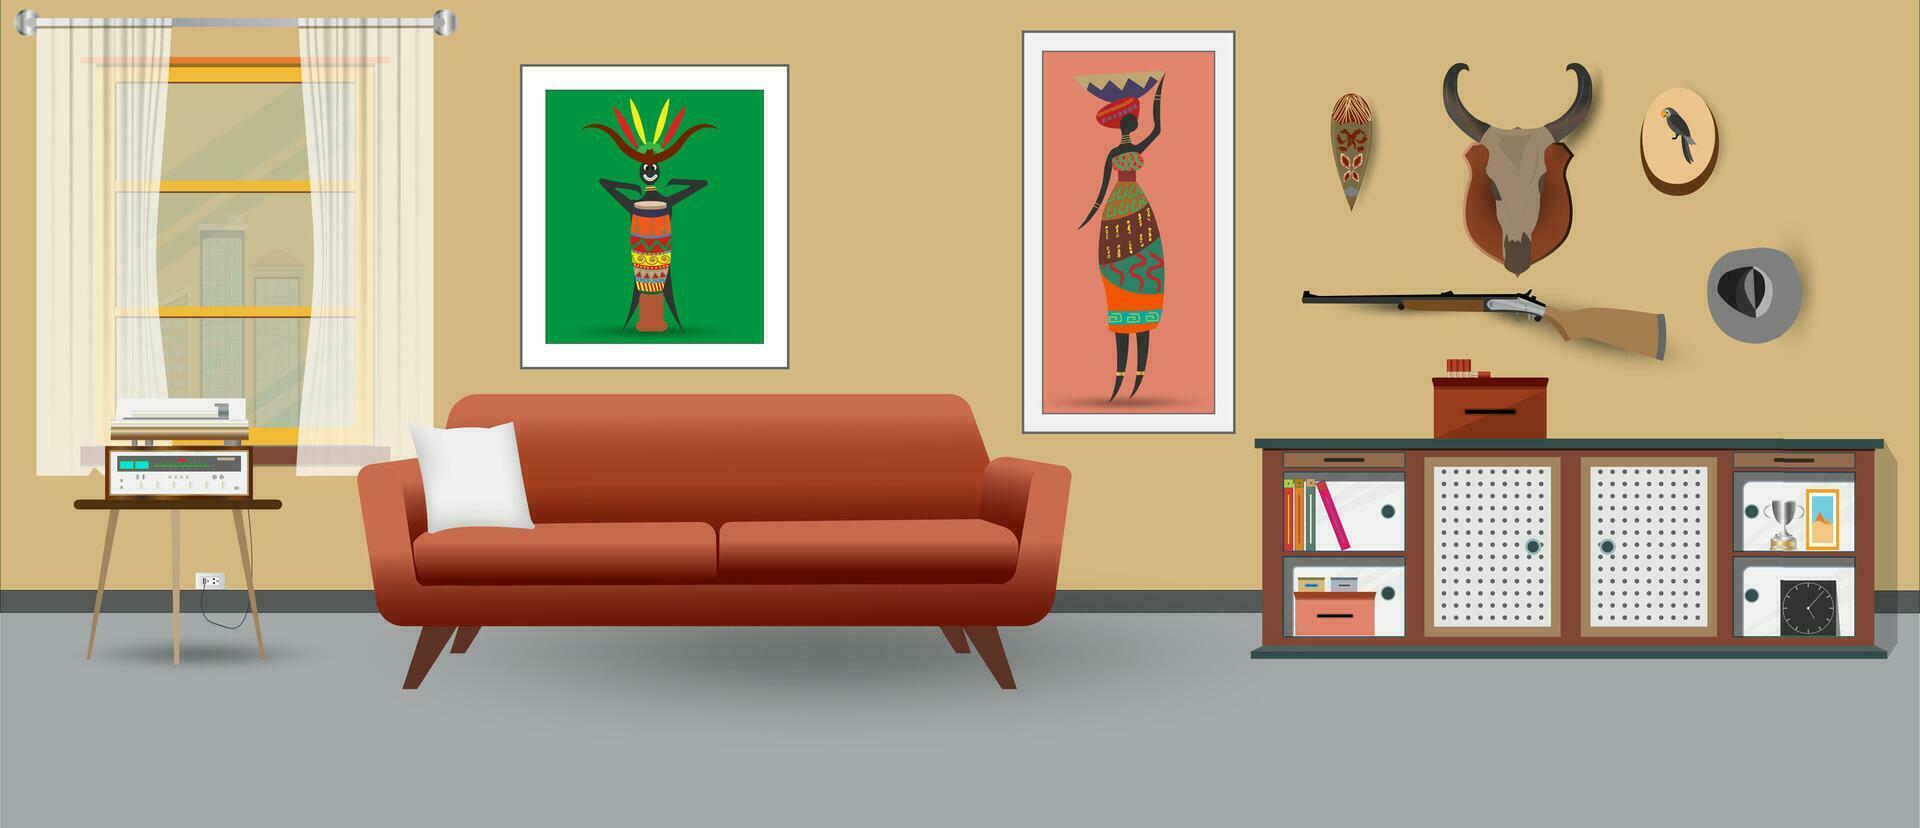 retro kleurrijk leven kamer interieur ontwerp. vlak stijl vector illustratie